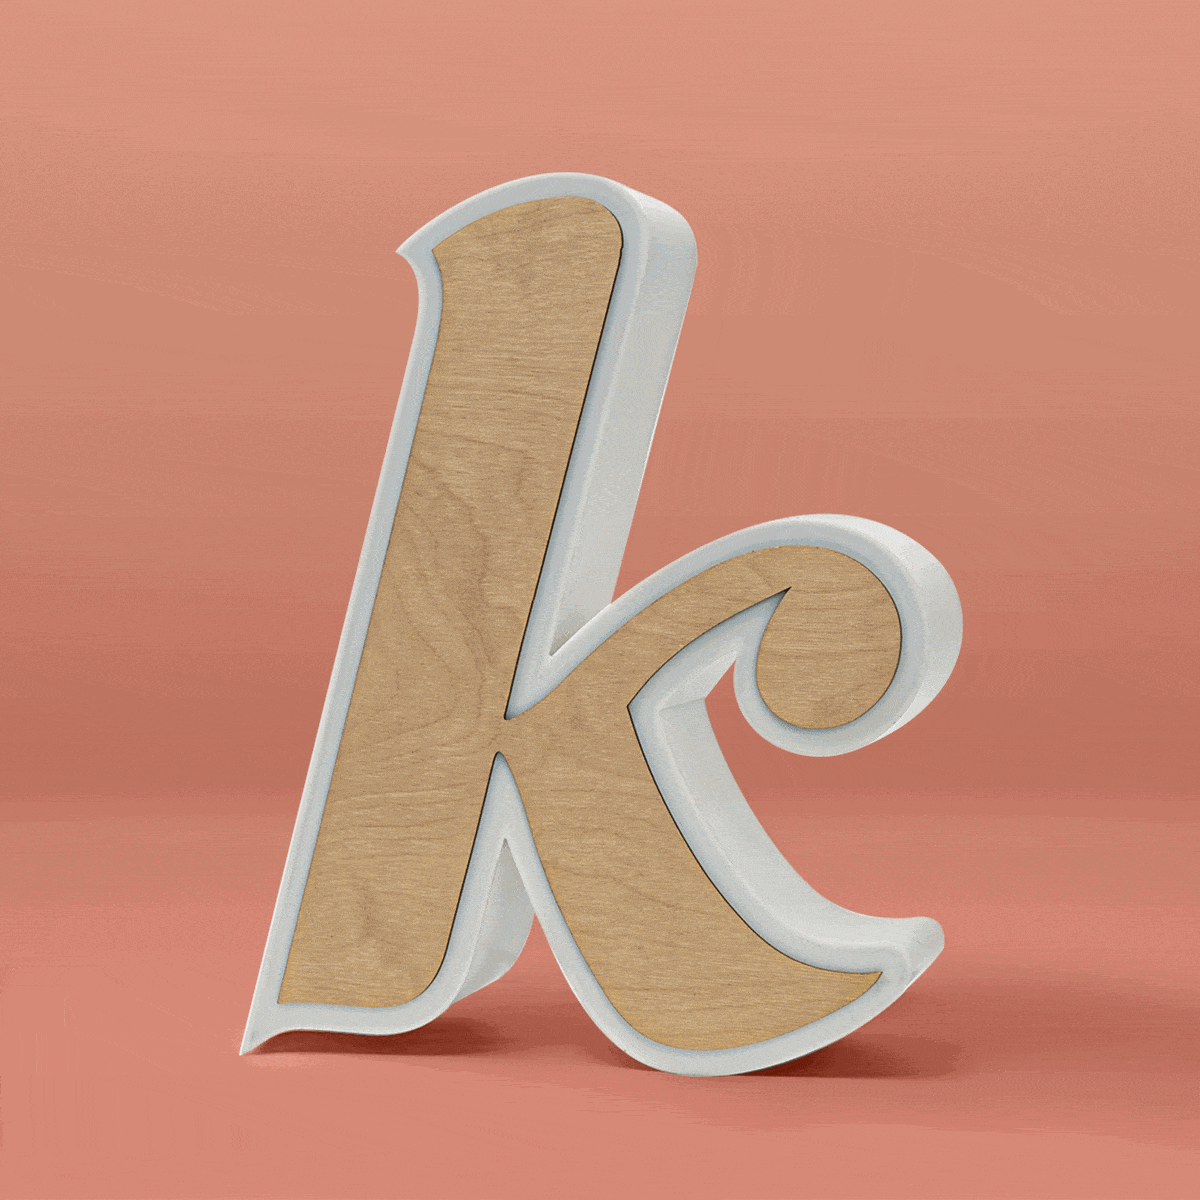 Litera K - świecąca po obrysie jak i bokiem, możliwe są dwa warianty